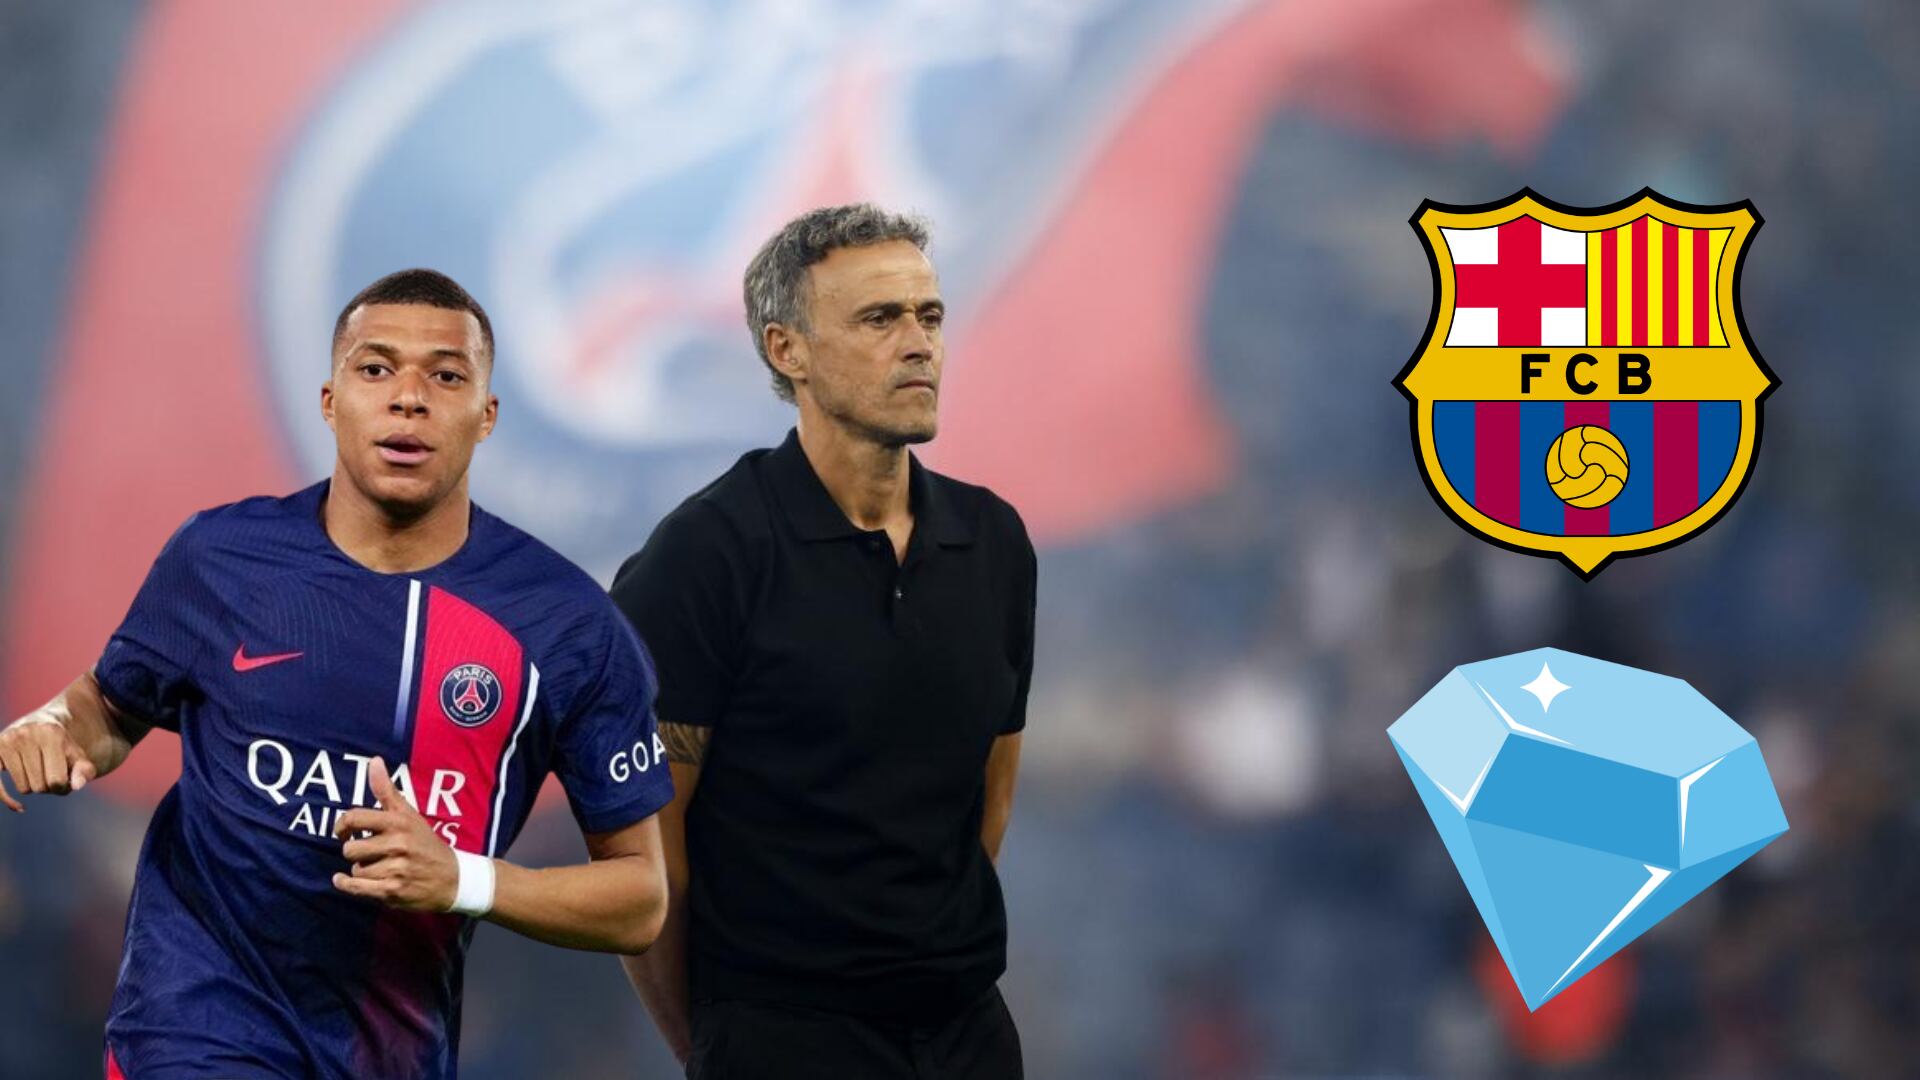 Perdió a Mbappé en Madrid, ahora PSG quiere robarle crack a Barça